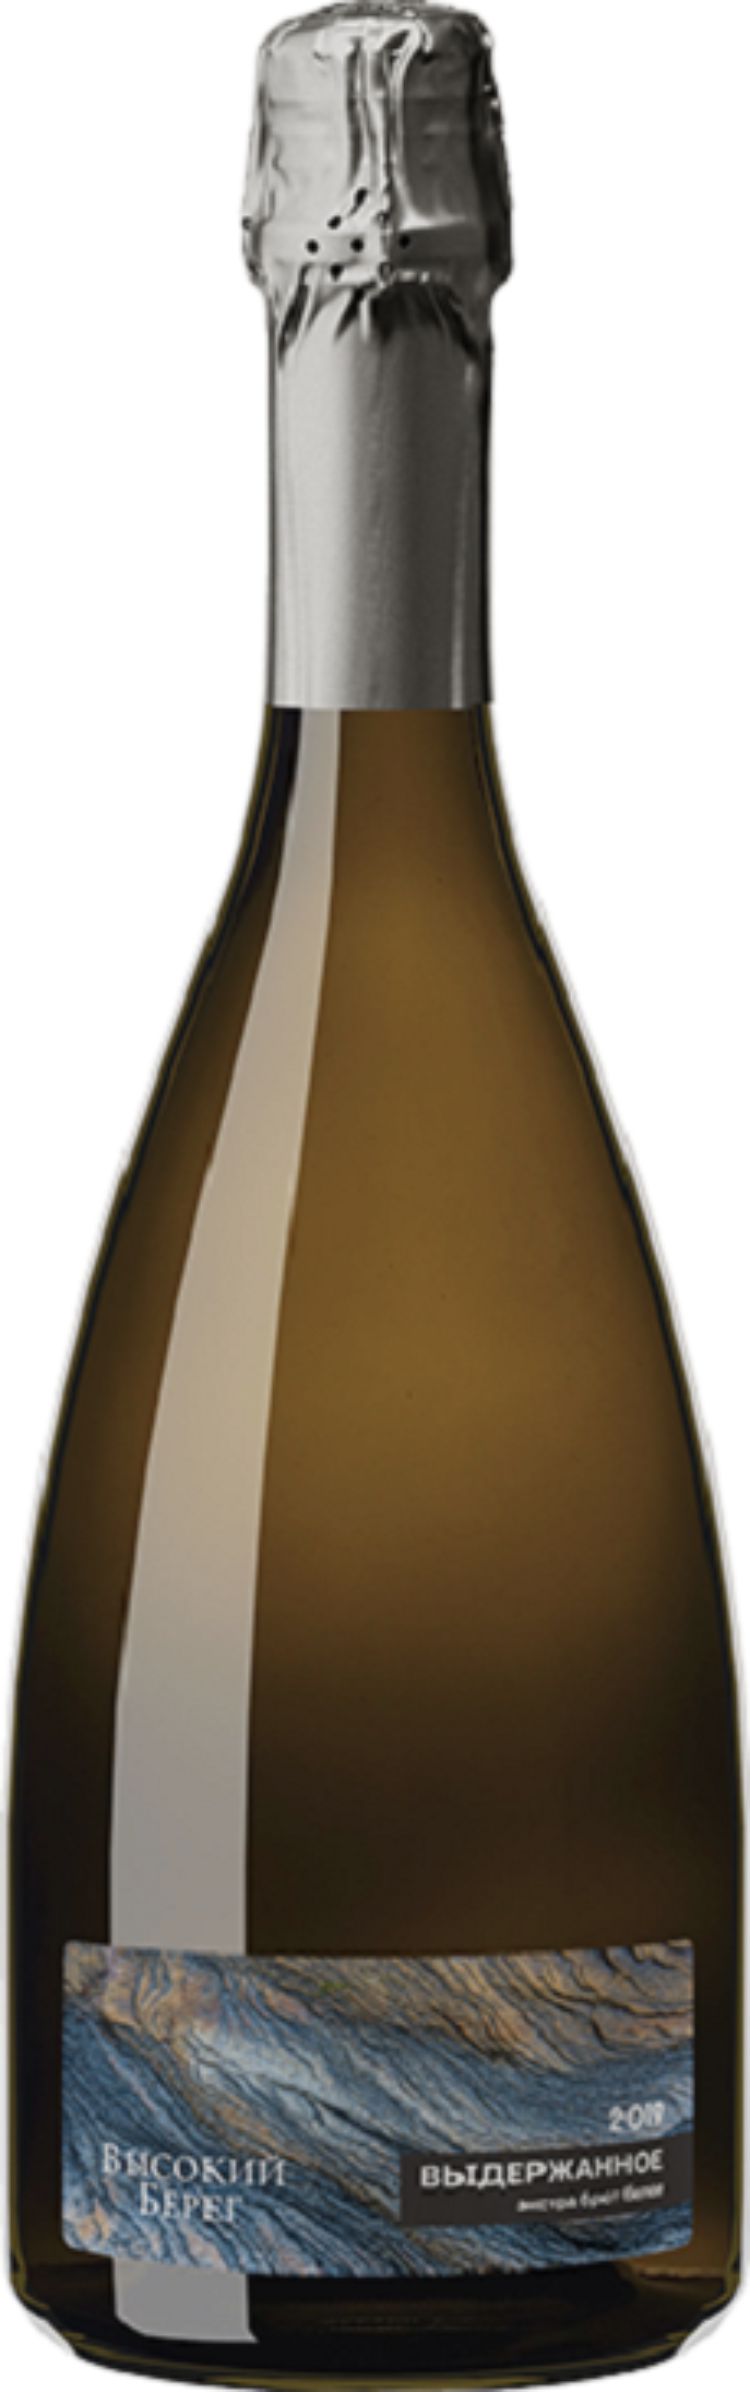 Игристое вино "Высокий берег", белое экстра брют, 0.75 л